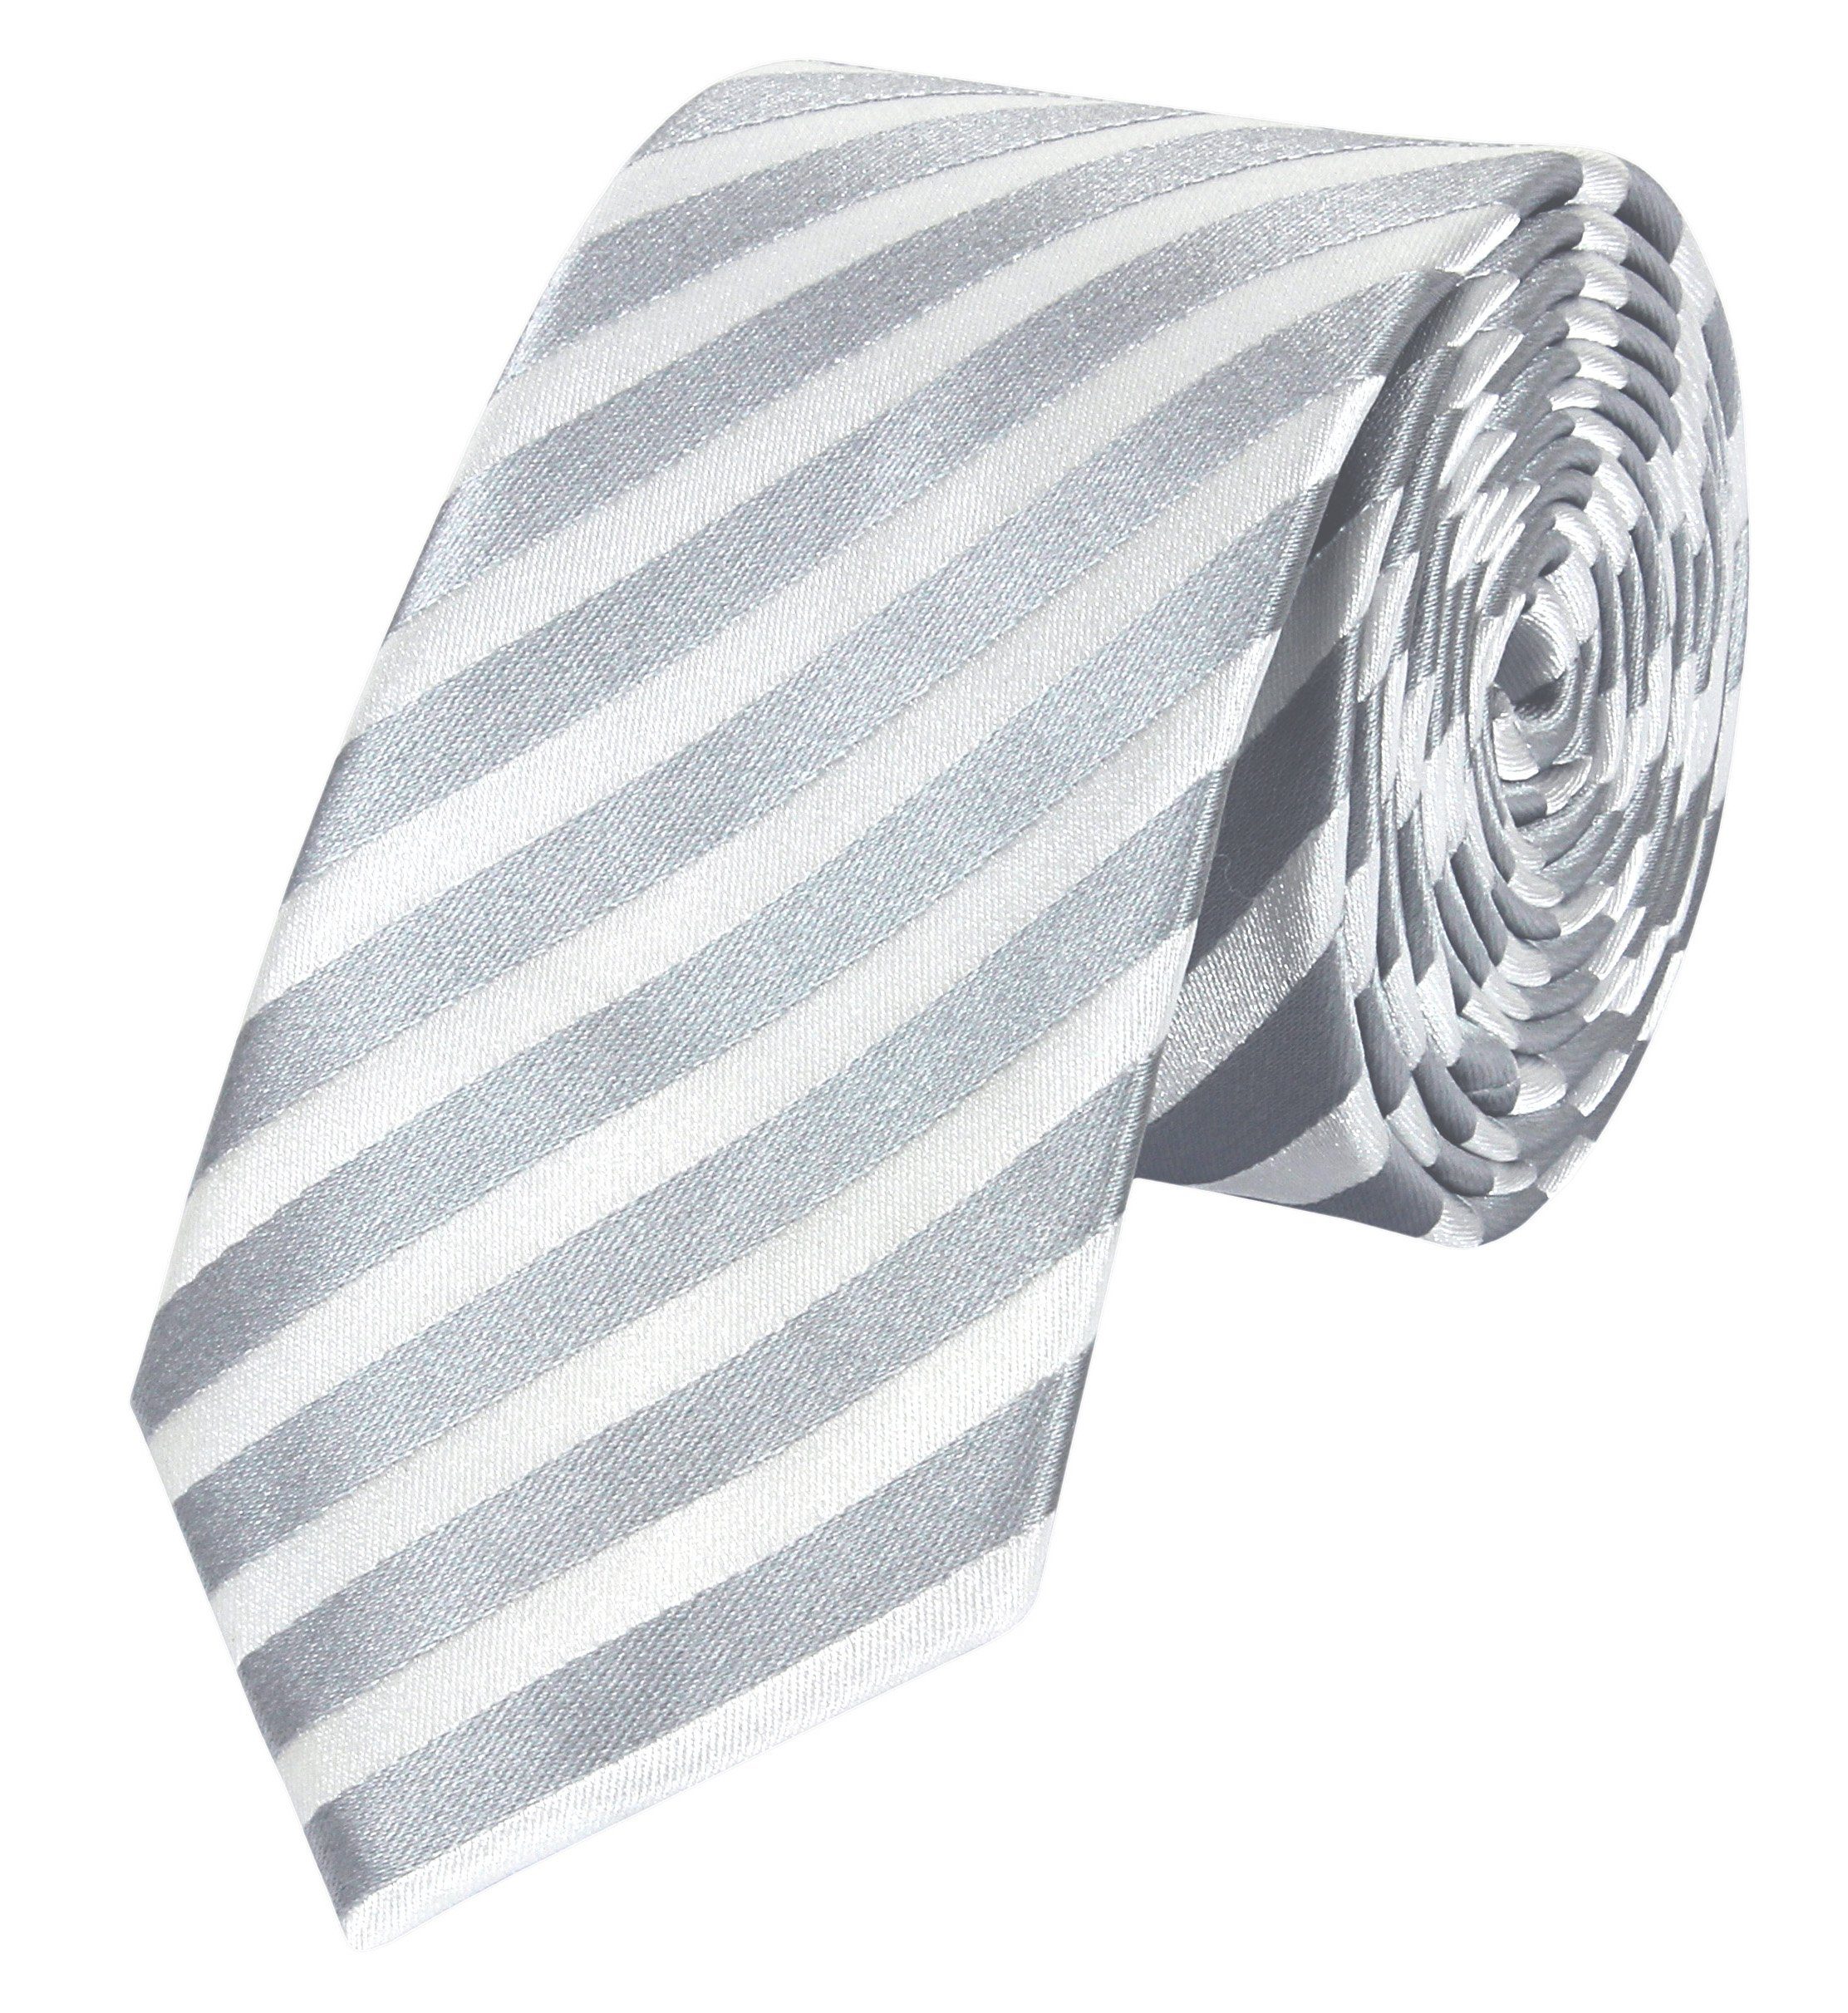 Fabio Farini Krawatte Herren Schlipse Männer (6cm), klassische Schmal Grau Grau/Weiß Breite in Gestreift) - Box, Silber - 6cm Krawatten Weiß (ohne